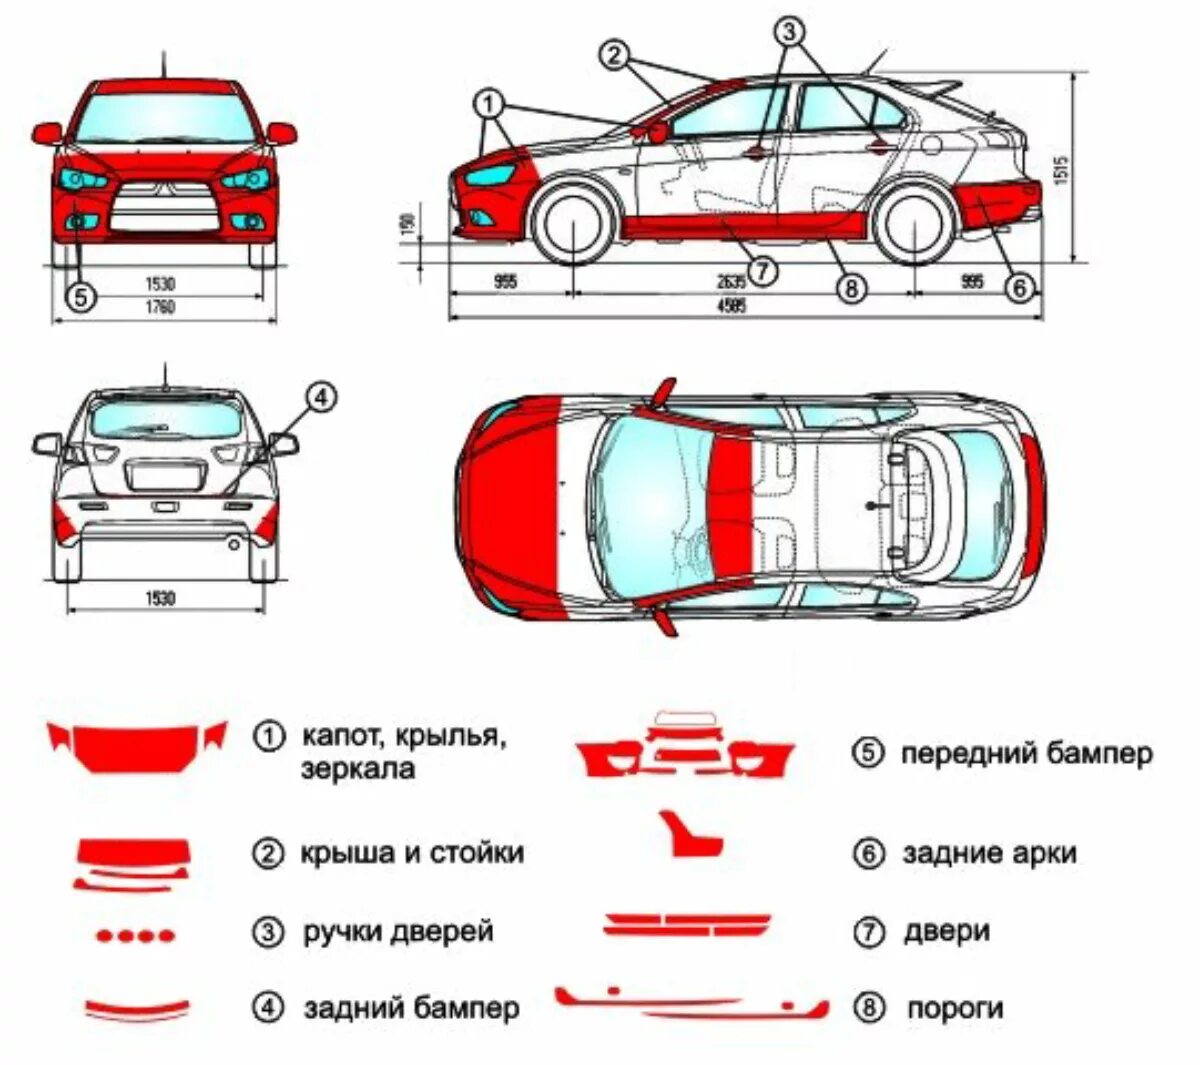 Детали легкового автомобиля. Название частей кузова автомобиля.